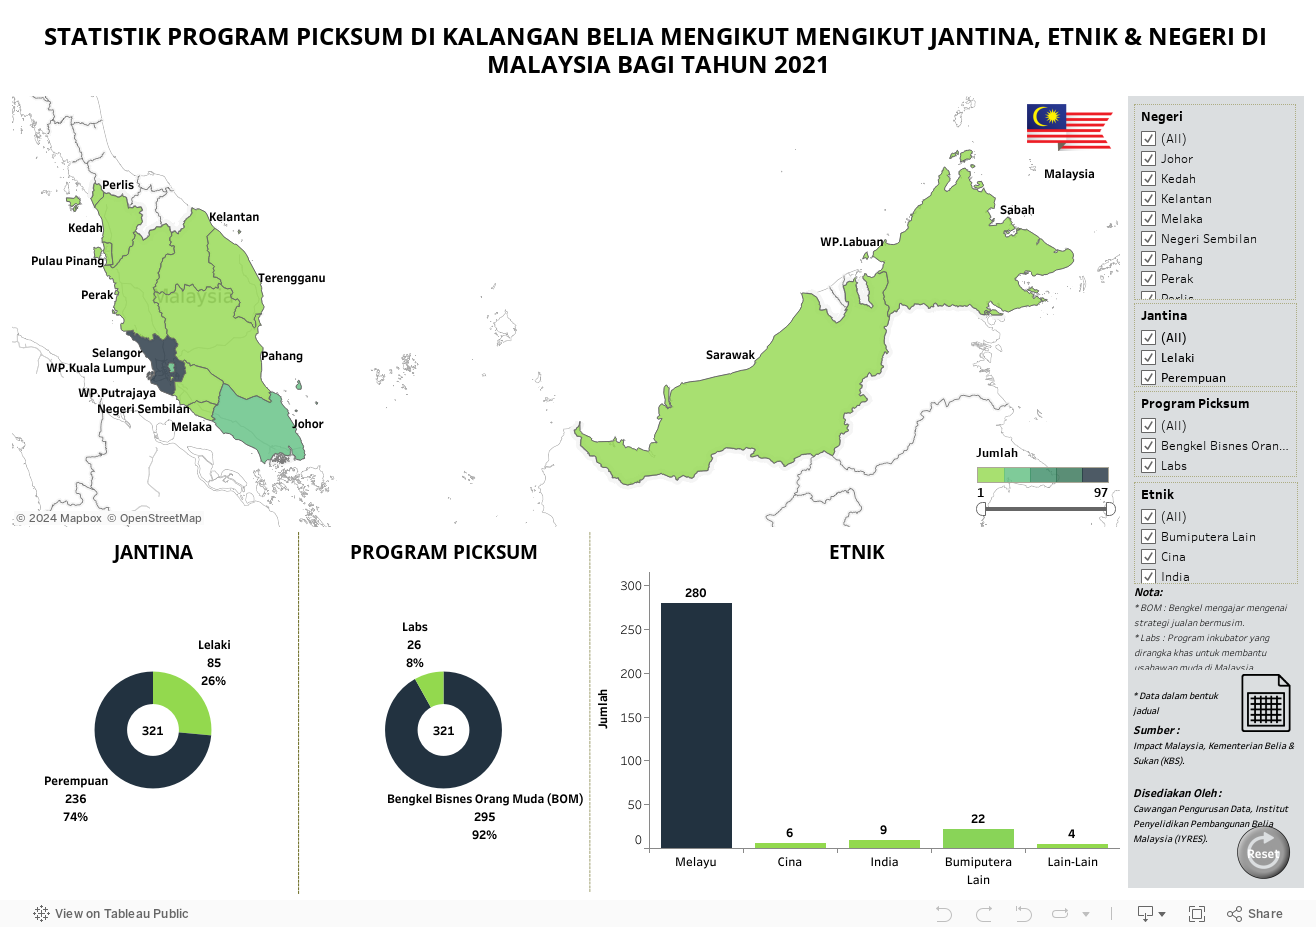 STATISTIK PROGRAM PICKSUM DI KALANGAN BELIA MENGIKUT MENGIKUT JANTINA, ETNIK & NEGERI DI MALAYSIA BAGI TAHUN 2021 